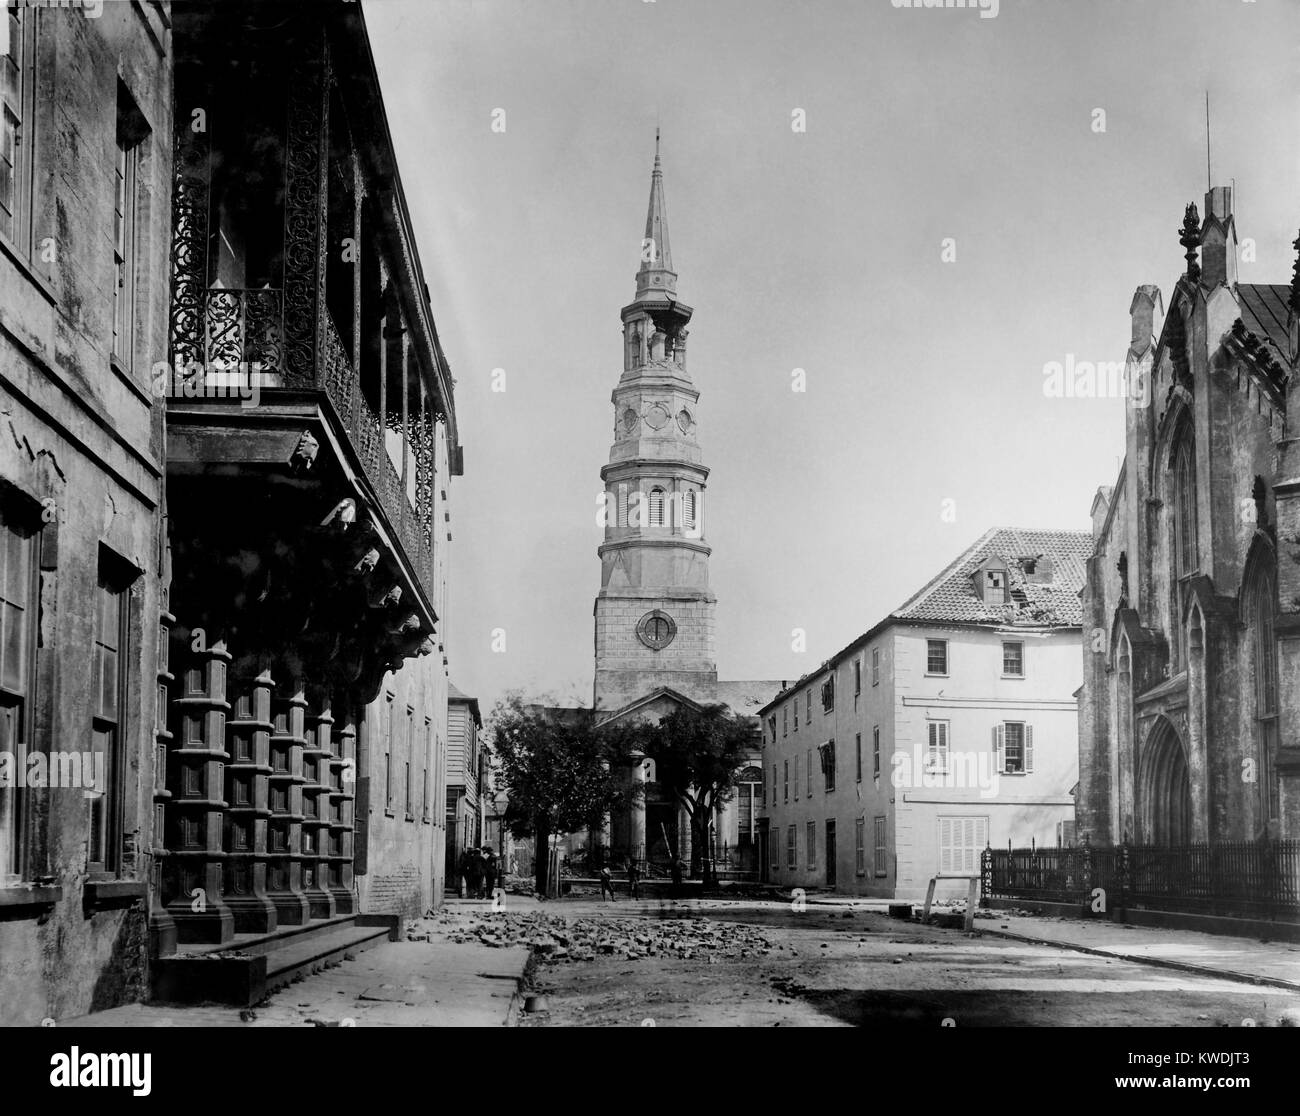 San Philips Chiesa torre danneggiata da Charleston terremoto del 31 agosto 1886. È stato il più devastante terremoto mai registrato negli Stati Uniti orientali, misurazione 6.9-7.3 sulla scala Richter. Foto di John K. Hillers (BSLOC 2017 17 54) Foto Stock